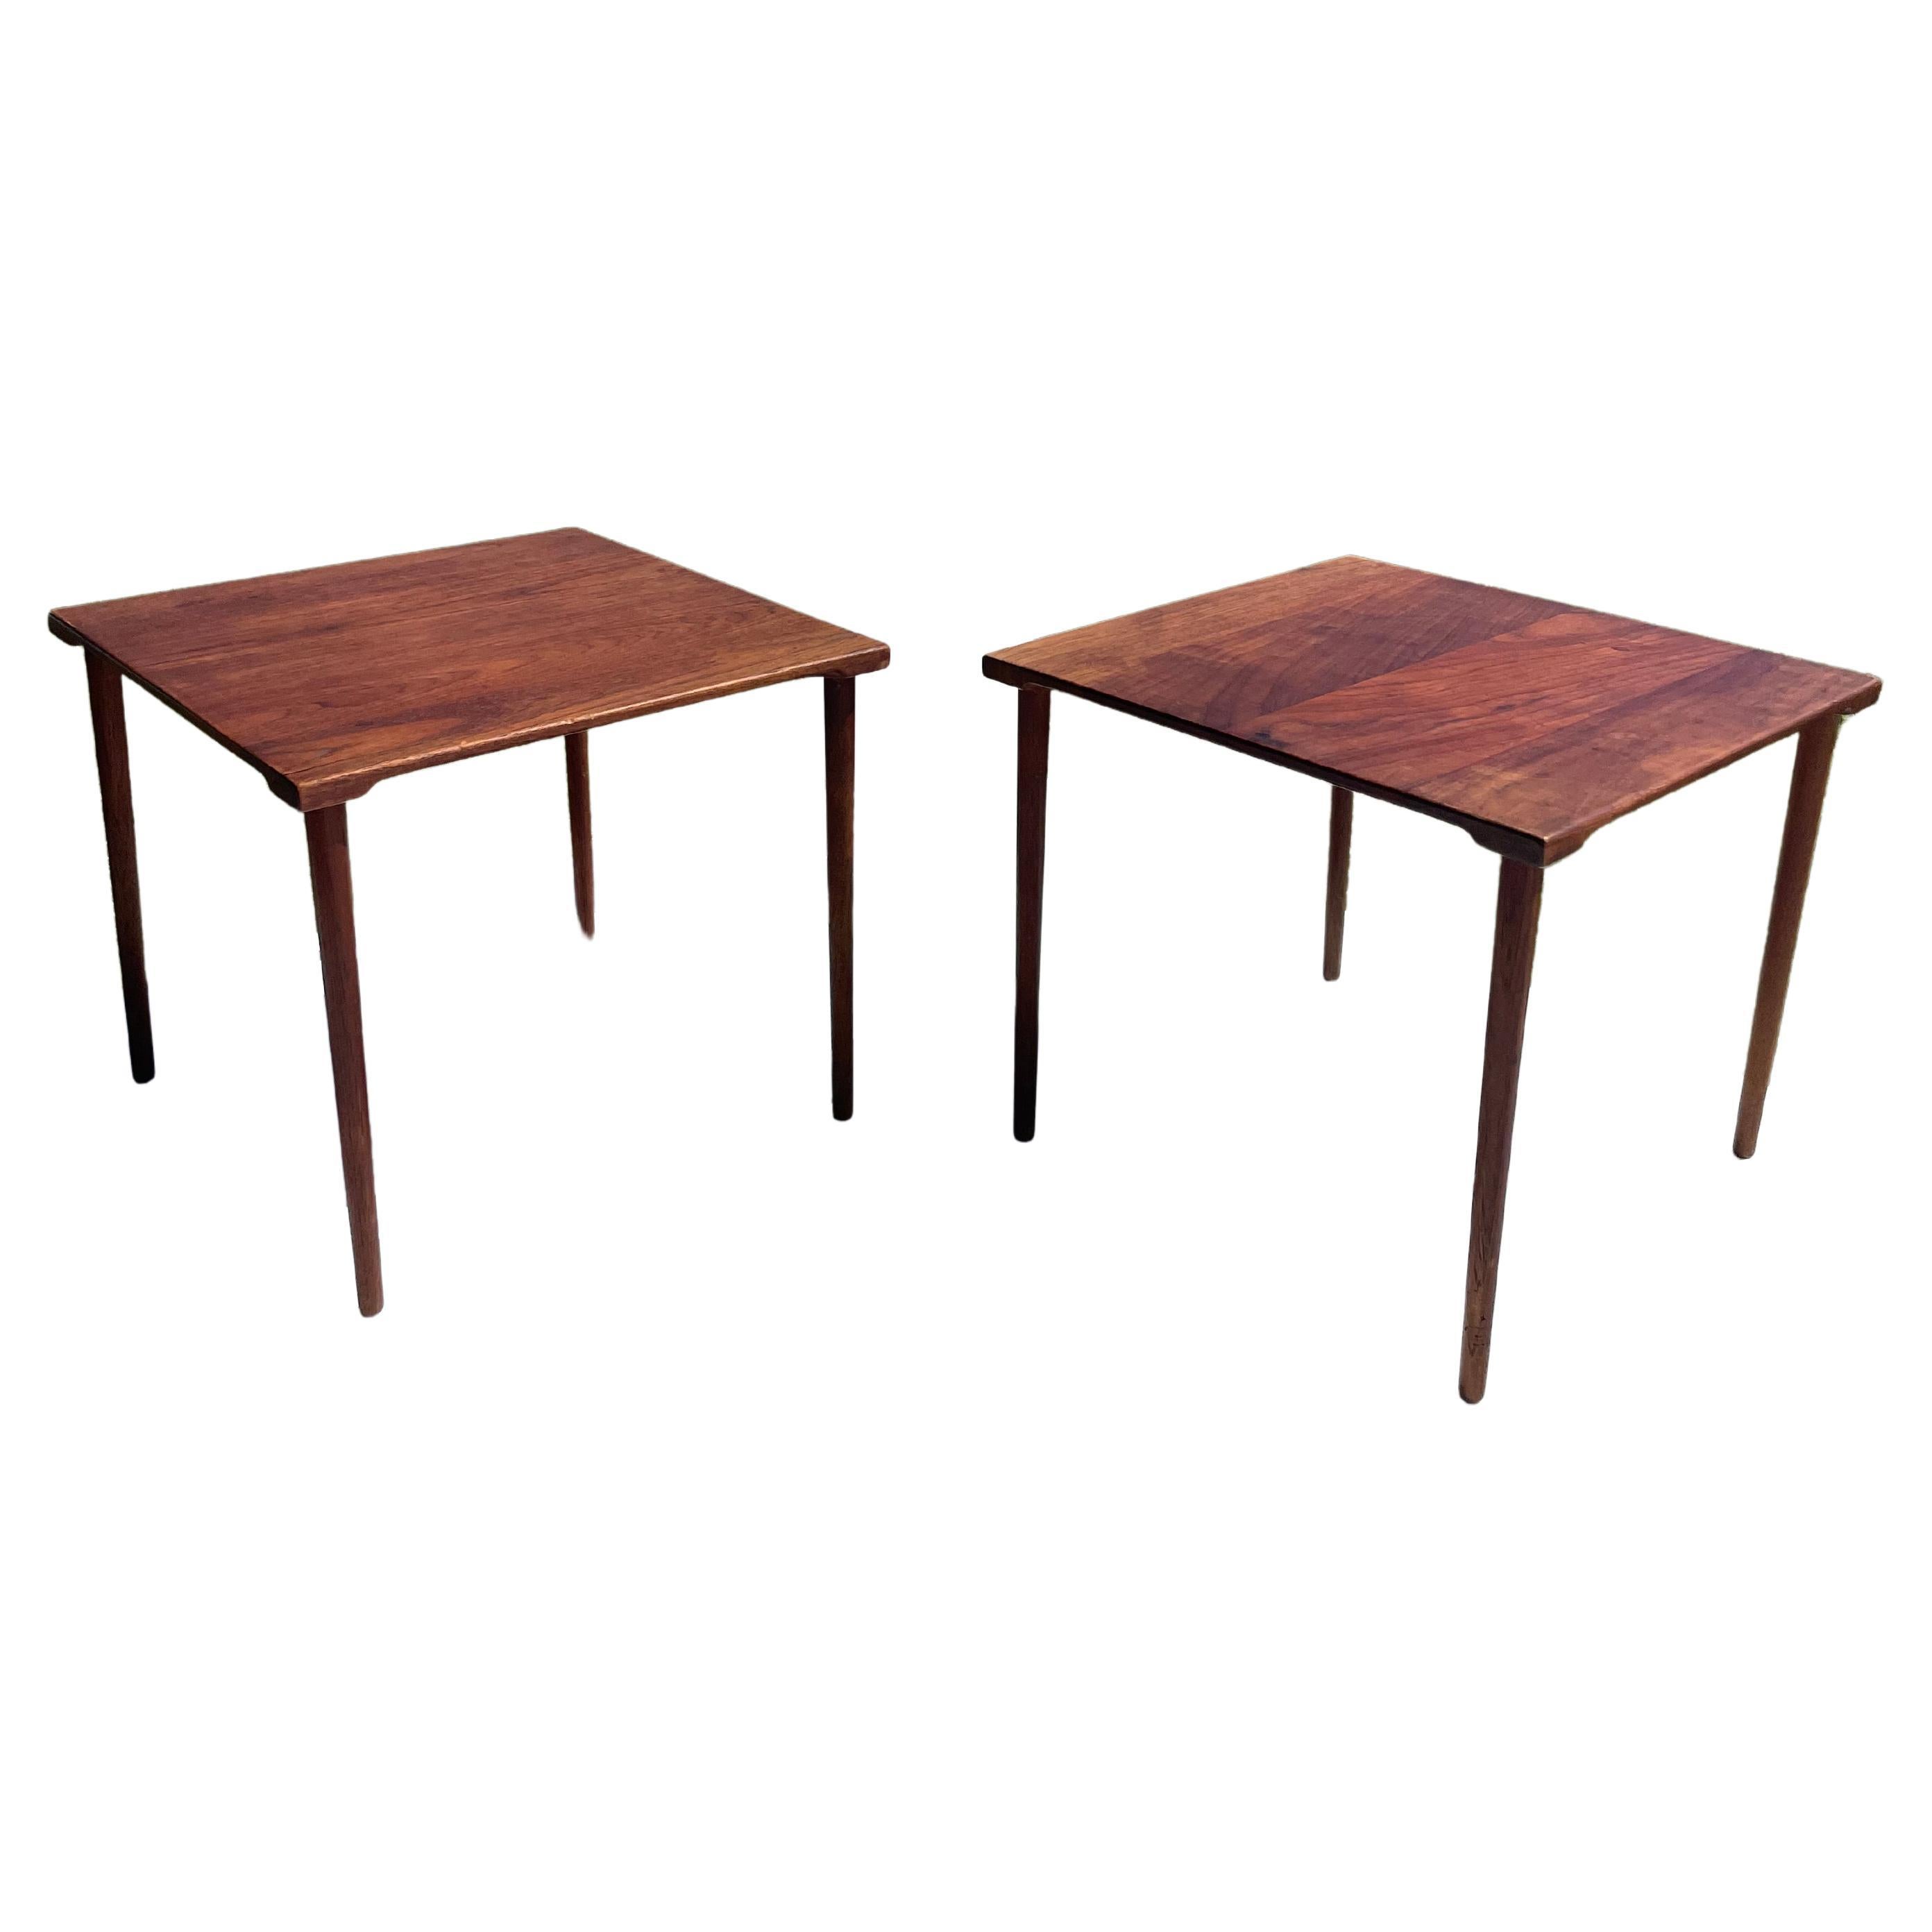 Pair of Danish Modern 1960s Teak Side Tables by Peter Hvidt for John Stuart Inc For Sale